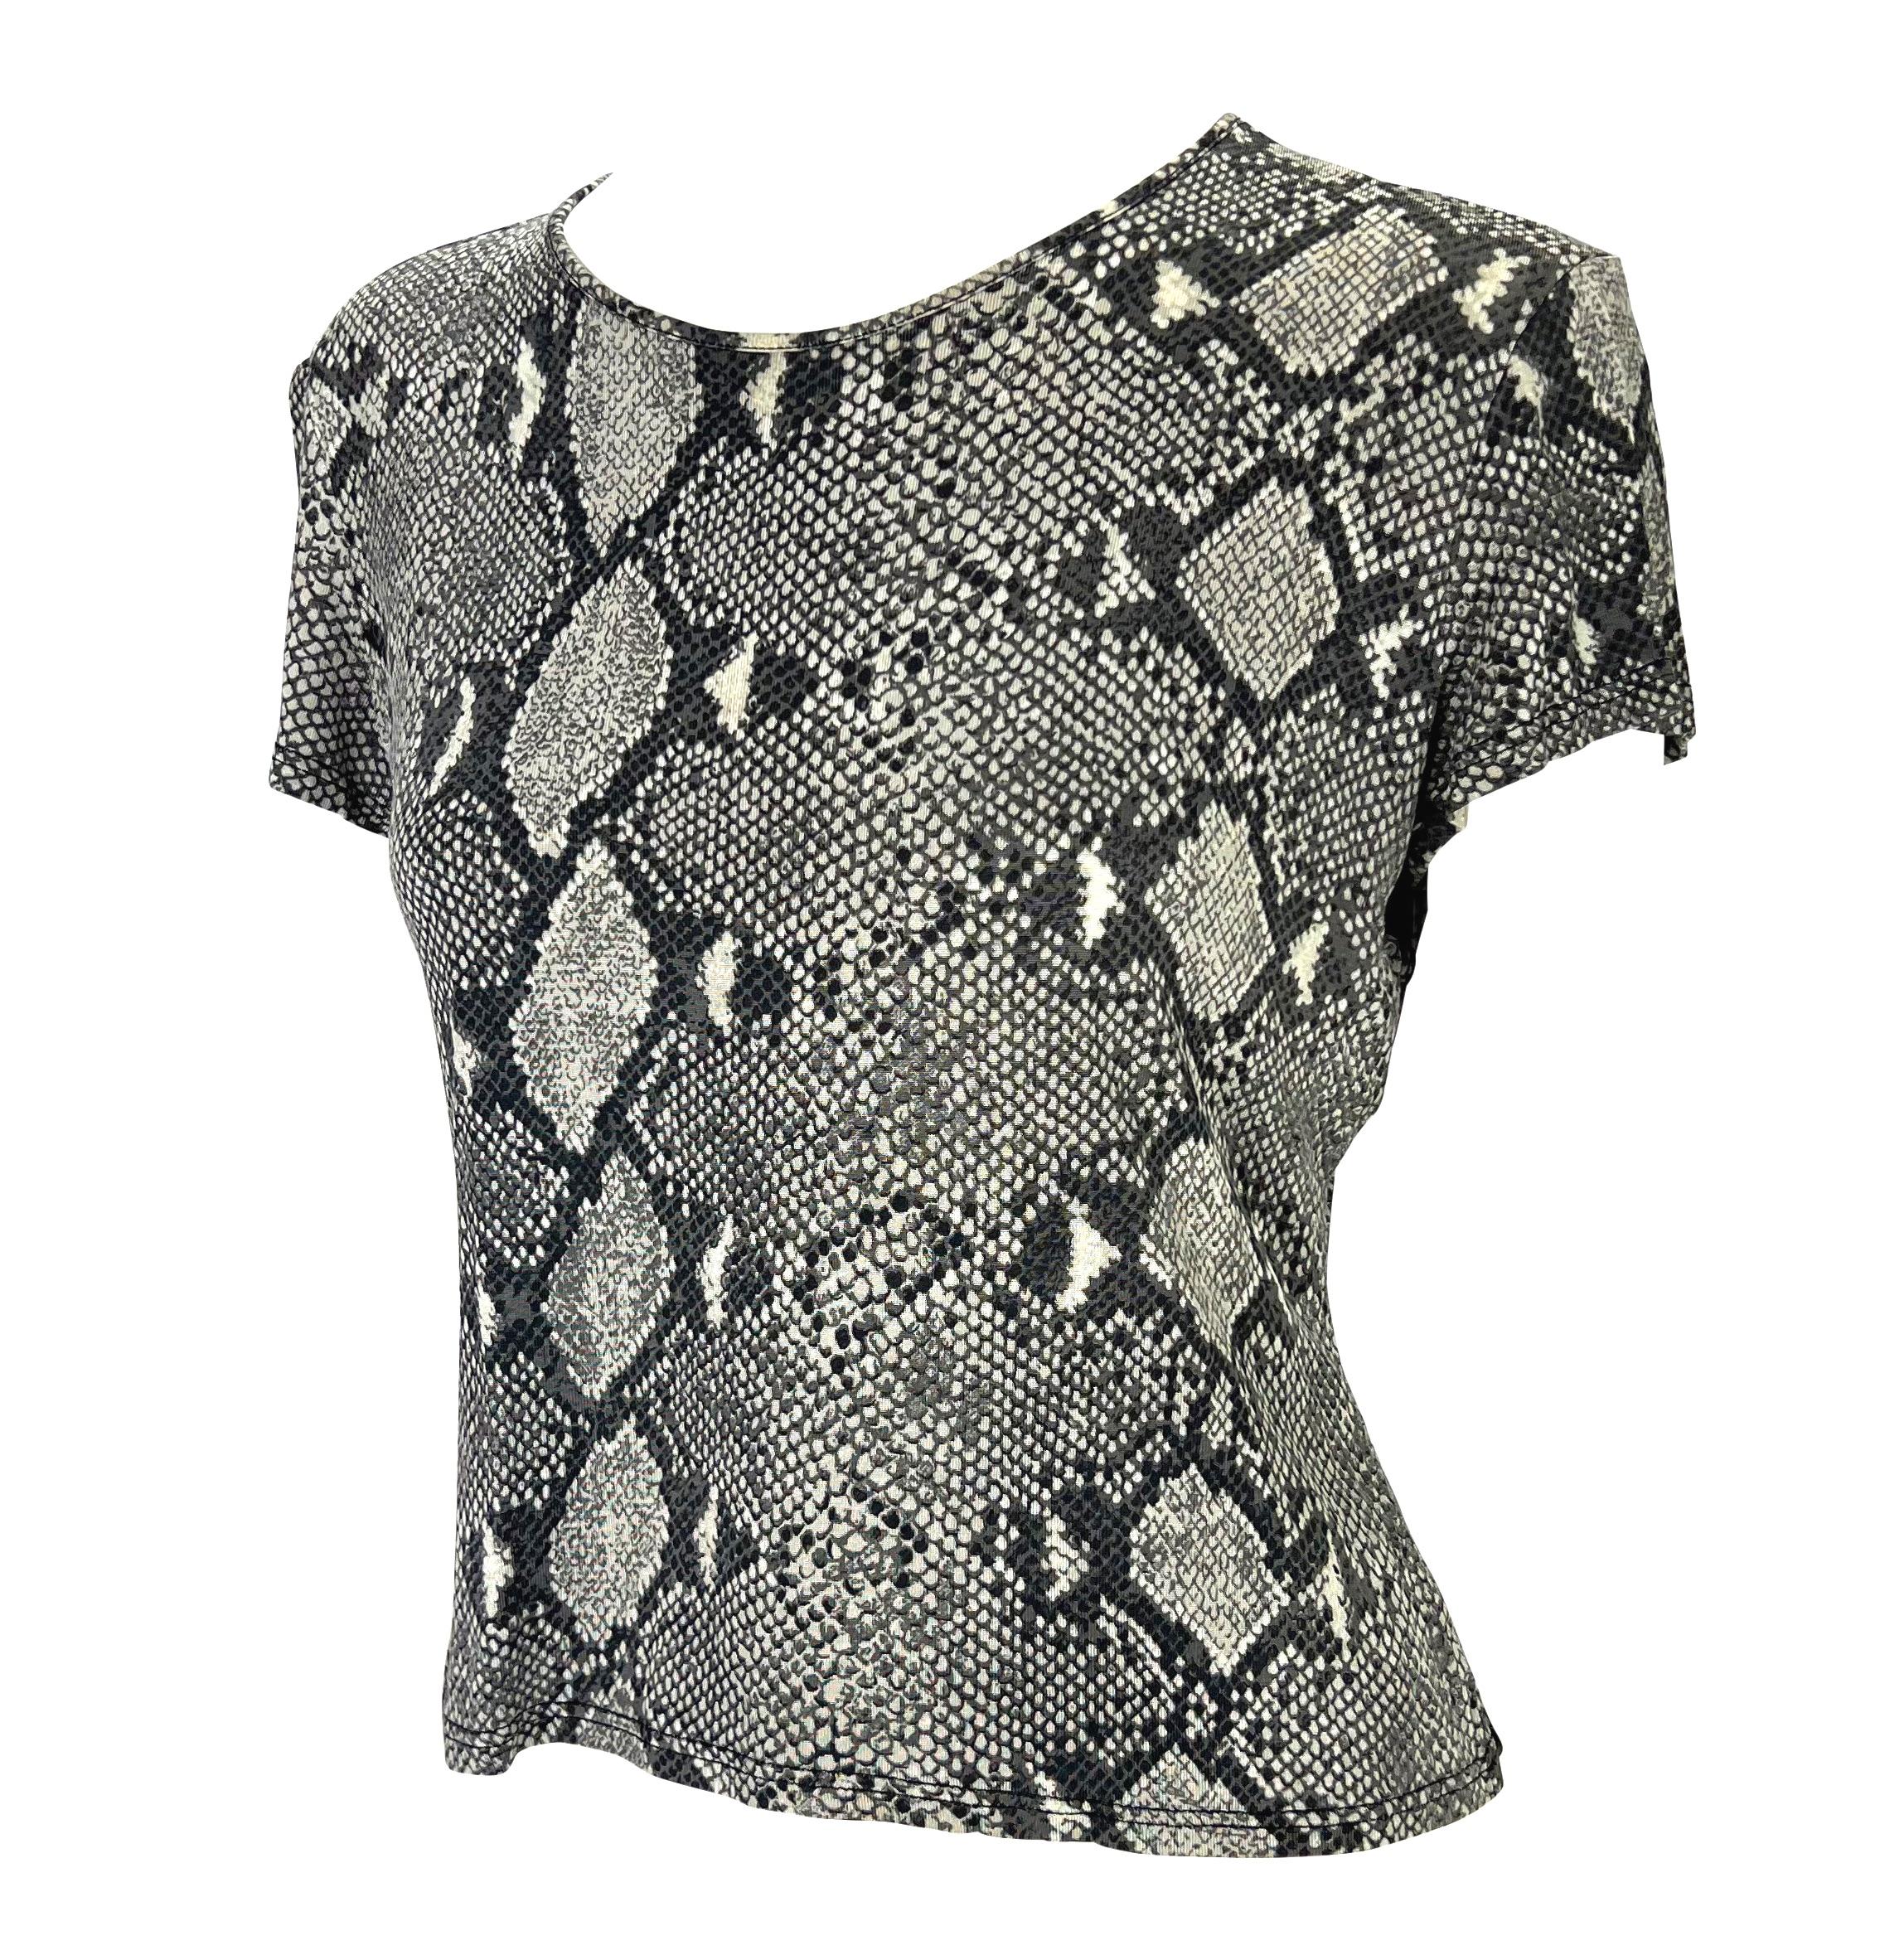 Voici un t-shirt Gucci gris imprimé peau de serpent, dessiné par Tom Ford. Issu de la collection printemps/été 2000, le défilé de la saison était recouvert de l'imprimé peau de serpent identique à celui de ce t-shirt. Cette chemise entièrement en